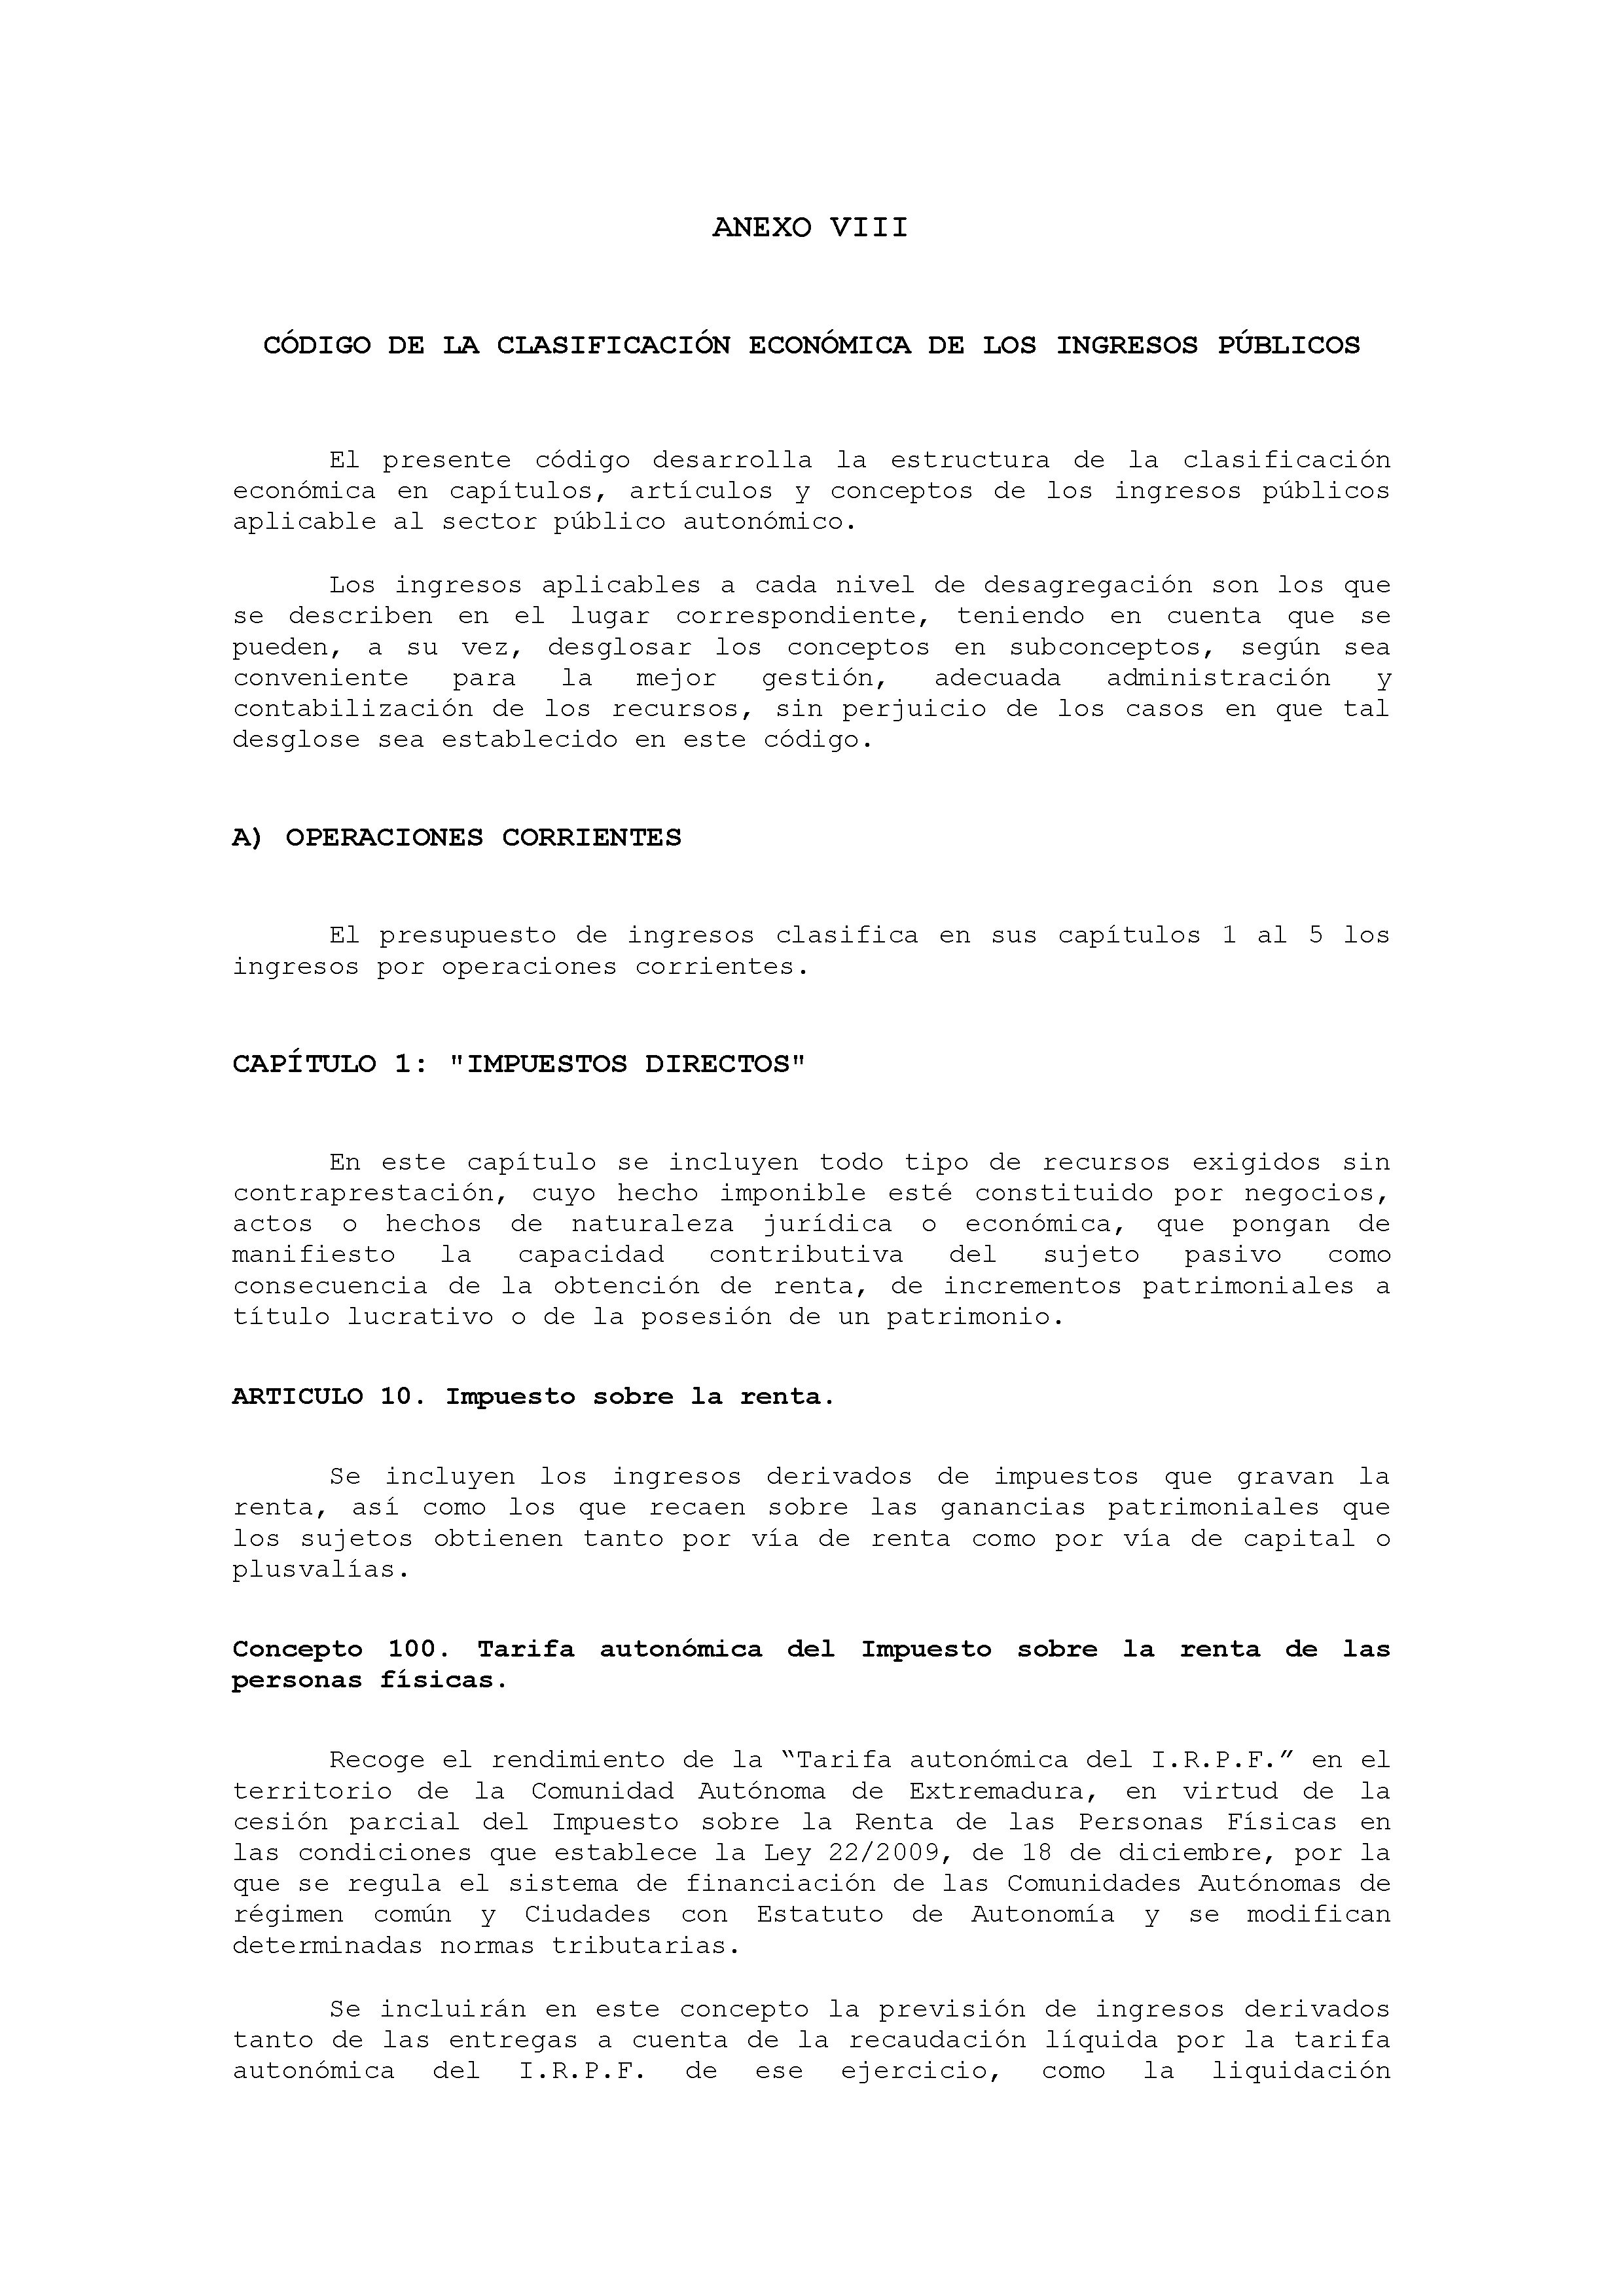 ANEXO VIII CÓDIGO DE LA CLASIFICACIÓN ECONÓMICA DE LOS INGRESOS PÚBLICOS Pag 1